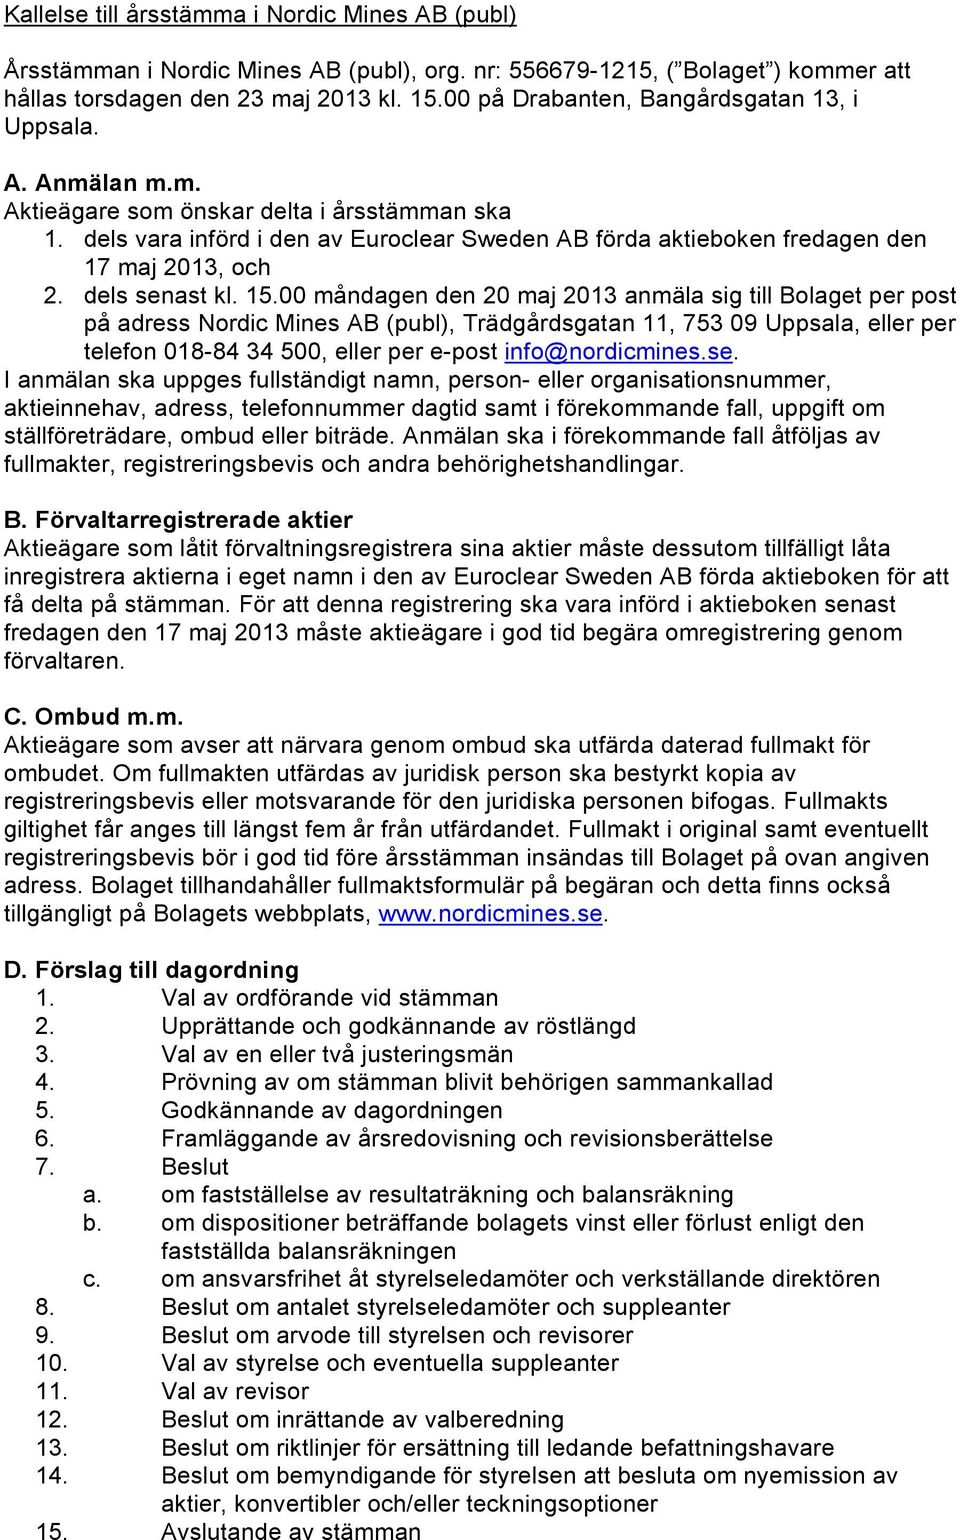 dels vara införd i den av Euroclear Sweden AB förda aktieboken fredagen den 17 maj 2013, och 2. dels senast kl. 15.